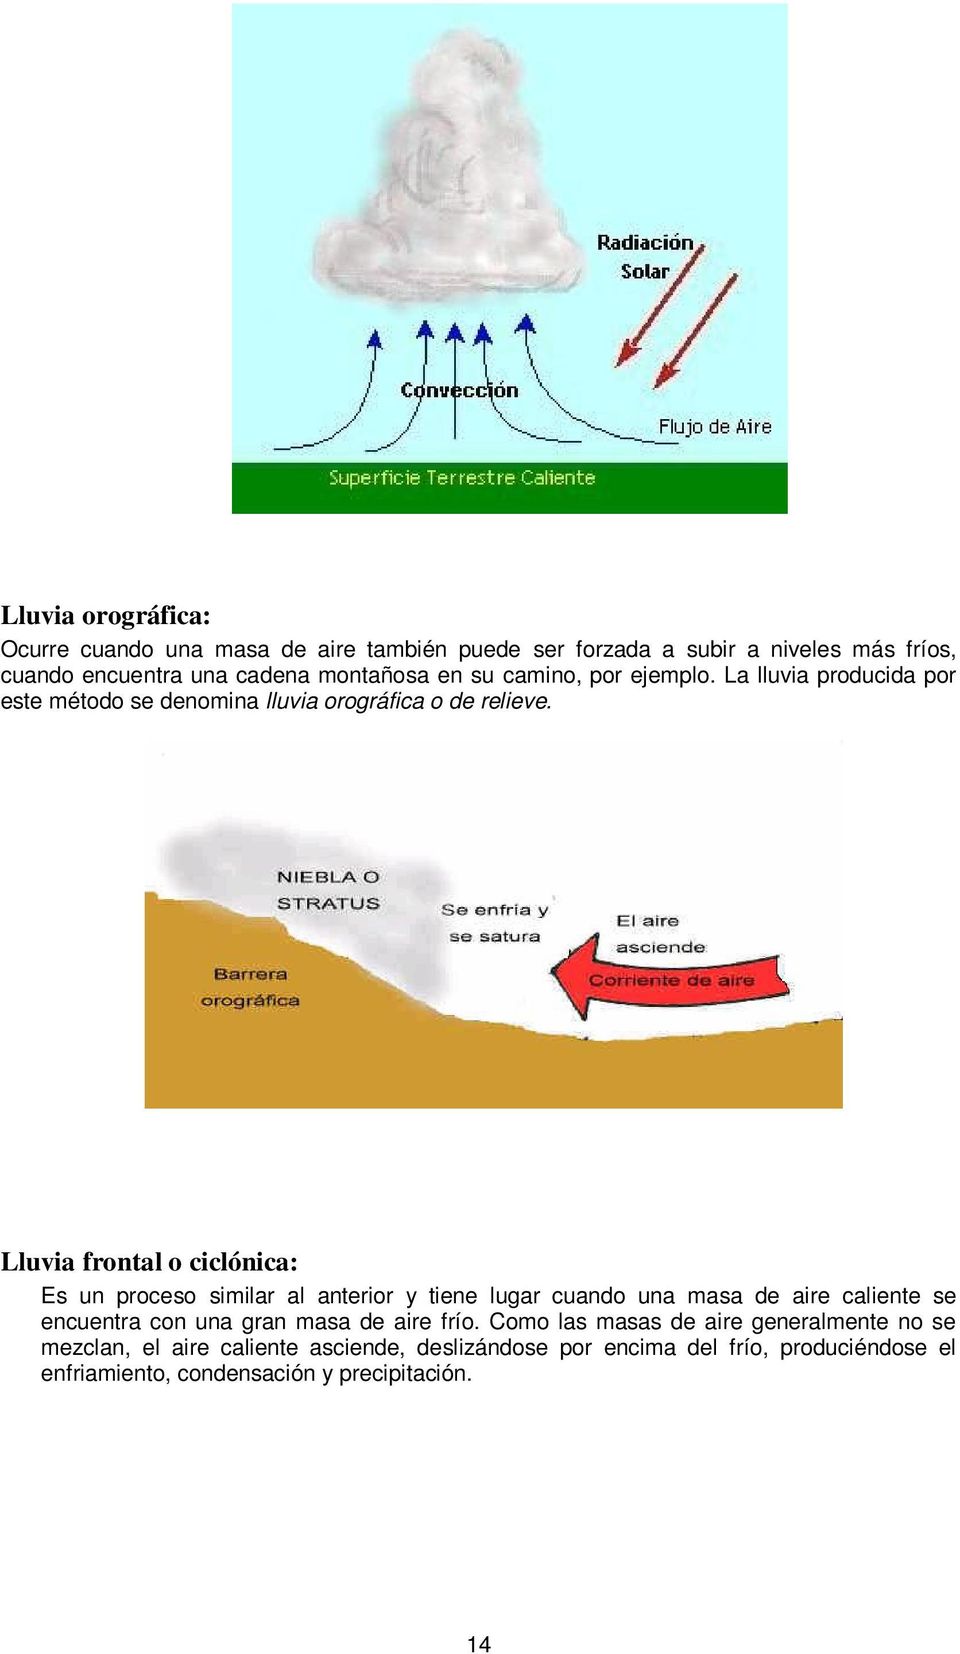 Lluvia frontal o ciclónica: Es un proceso similar al anterior y tiene lugar cuando una masa de aire caliente se encuentra con una gran masa de